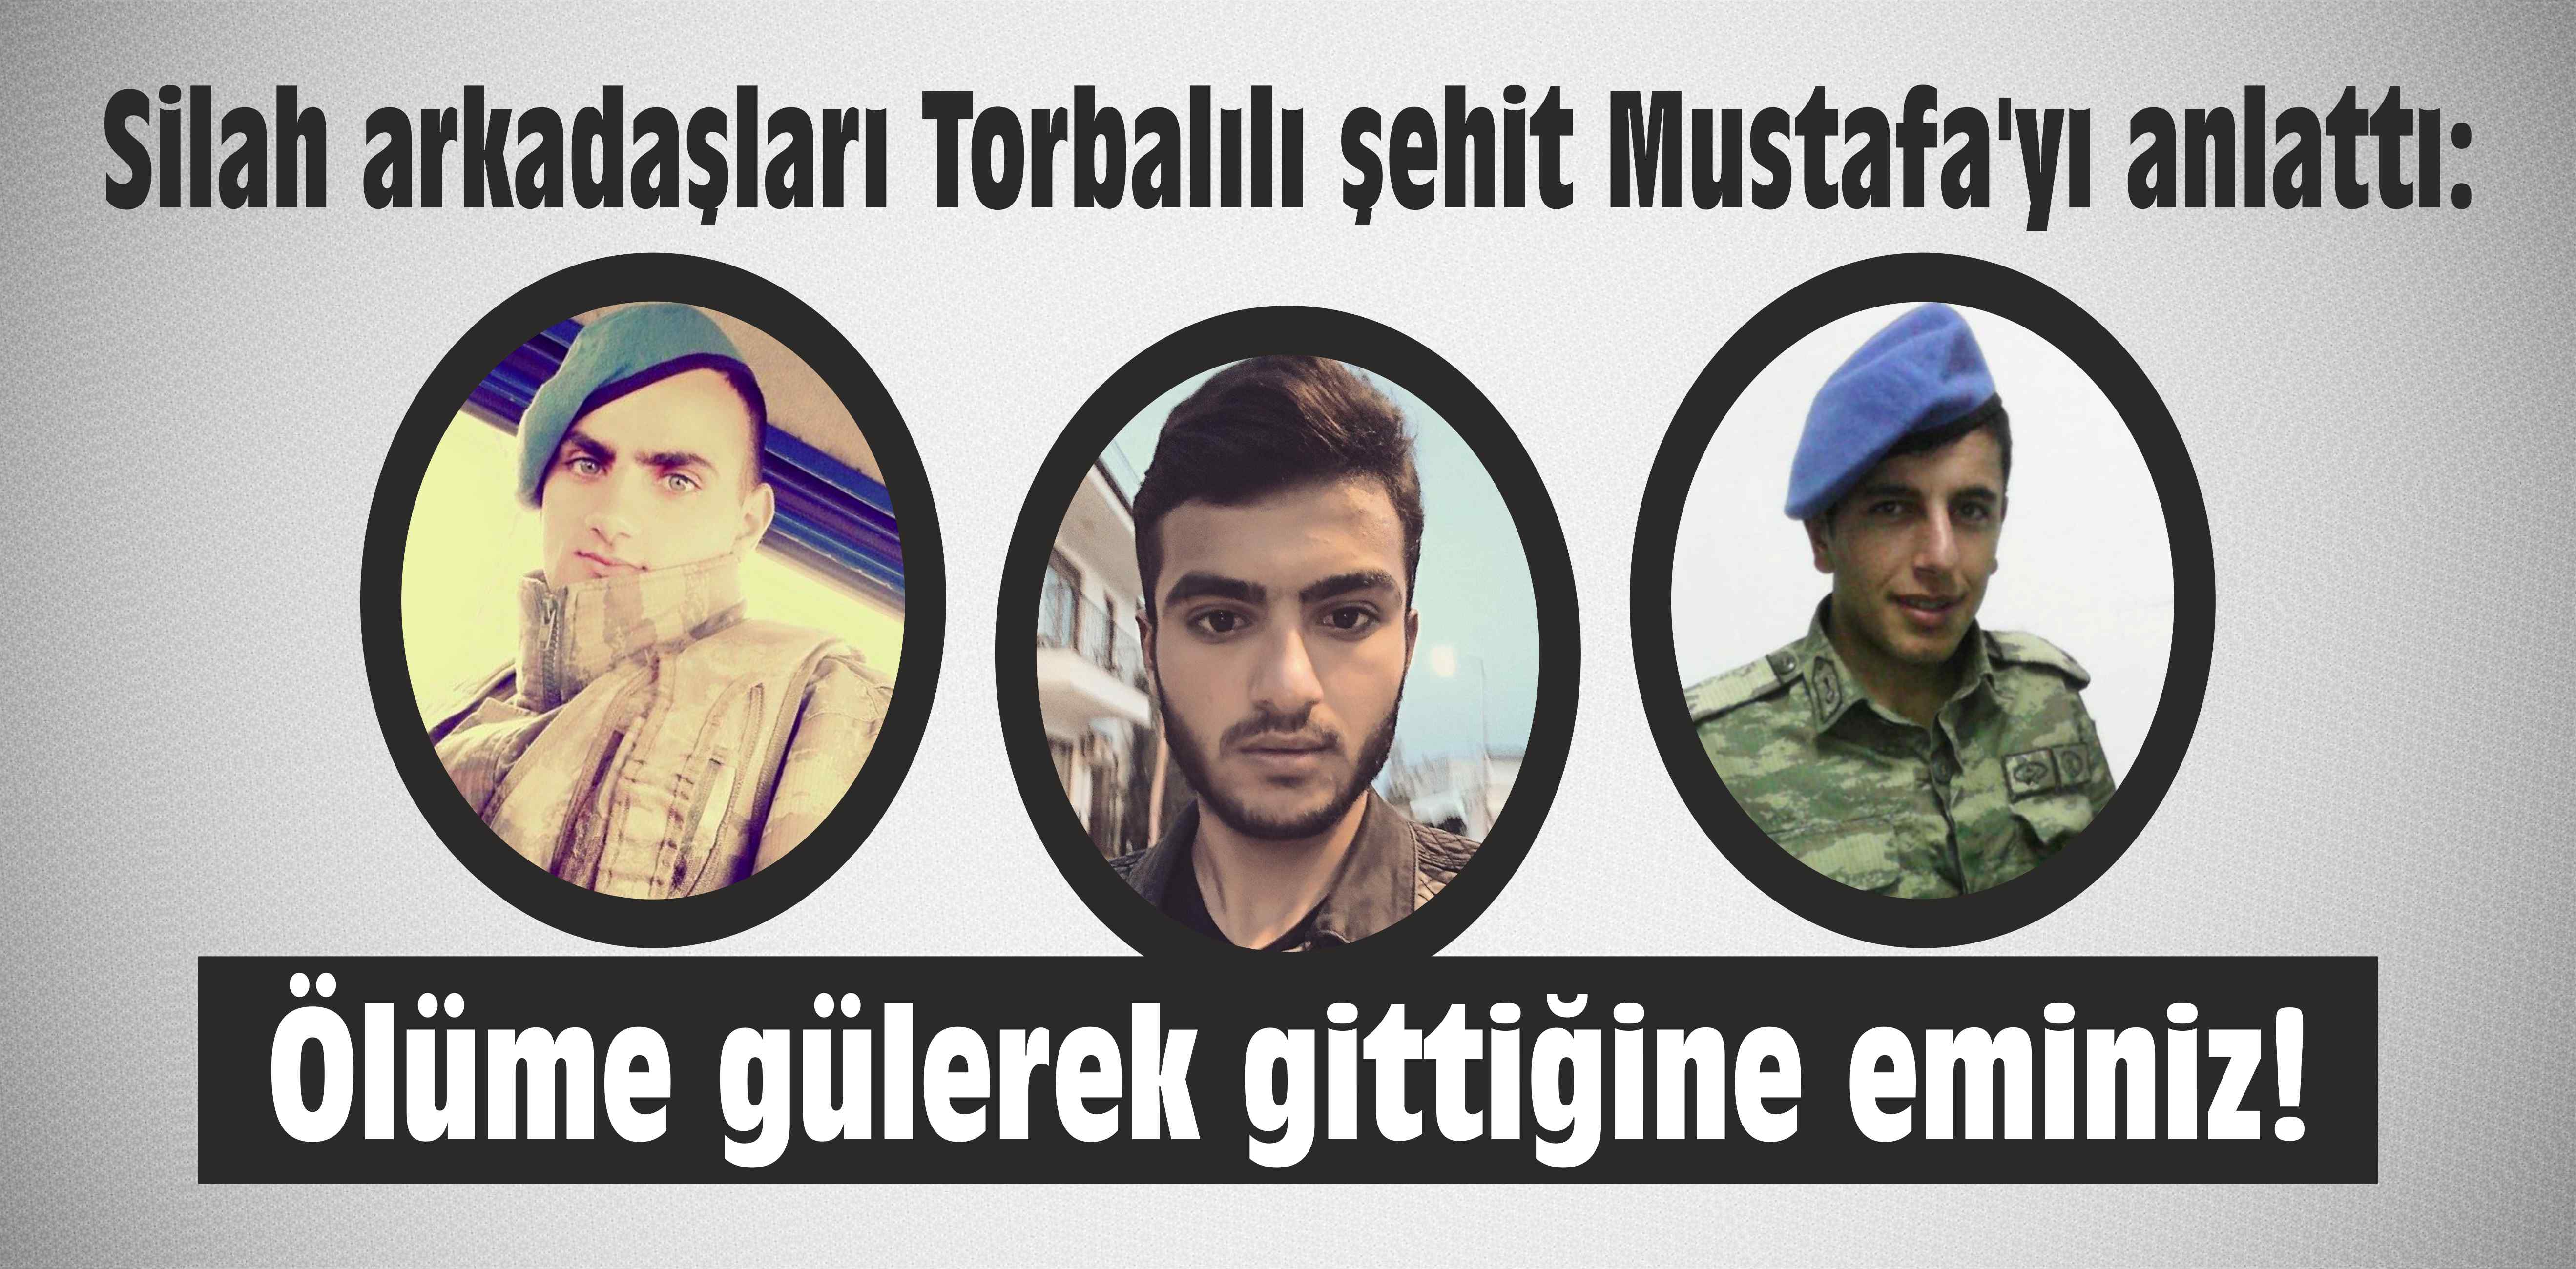 Silah arkadaşları Mustafa’yı anlattı: